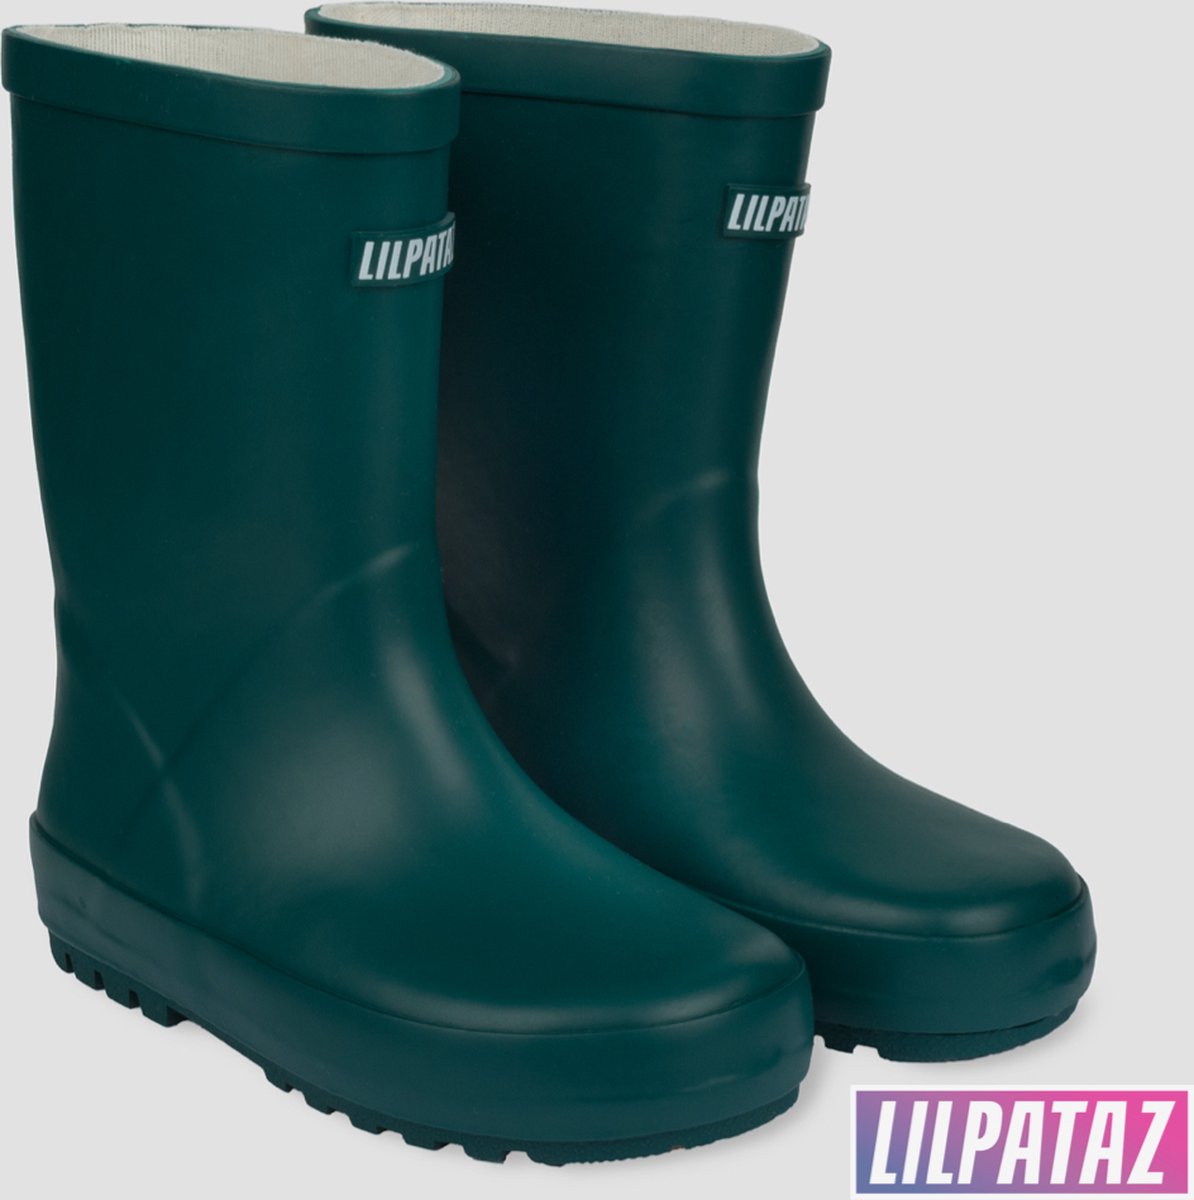 LilPataz Rainboot - Regenlaars kinderen - Jongens Meisjes - Groen - kinder regenlaarzen - Maat 25